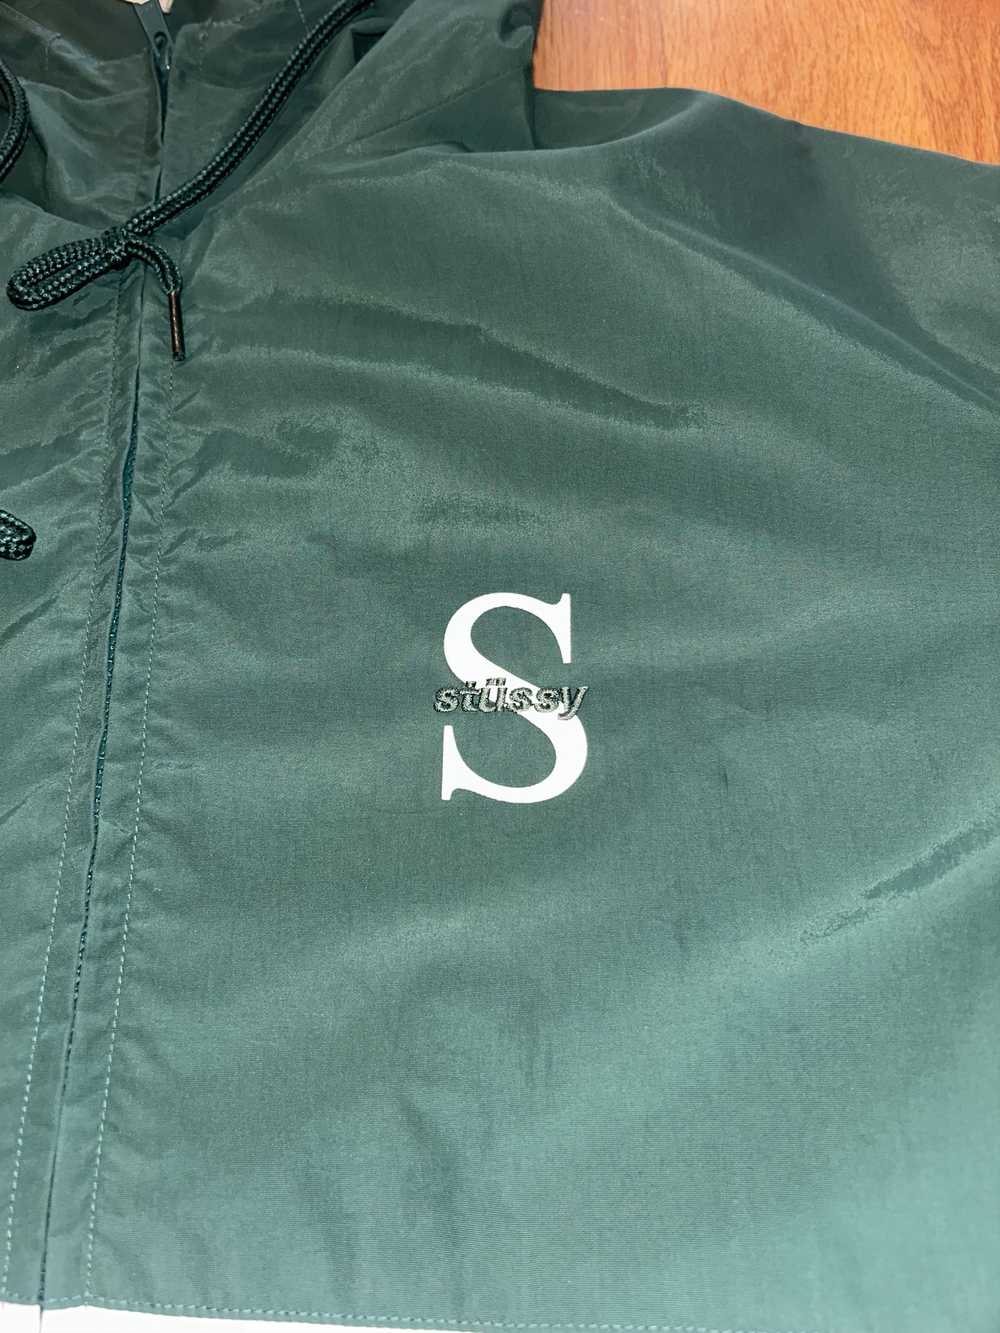 Stussy Sports Jacket - image 2